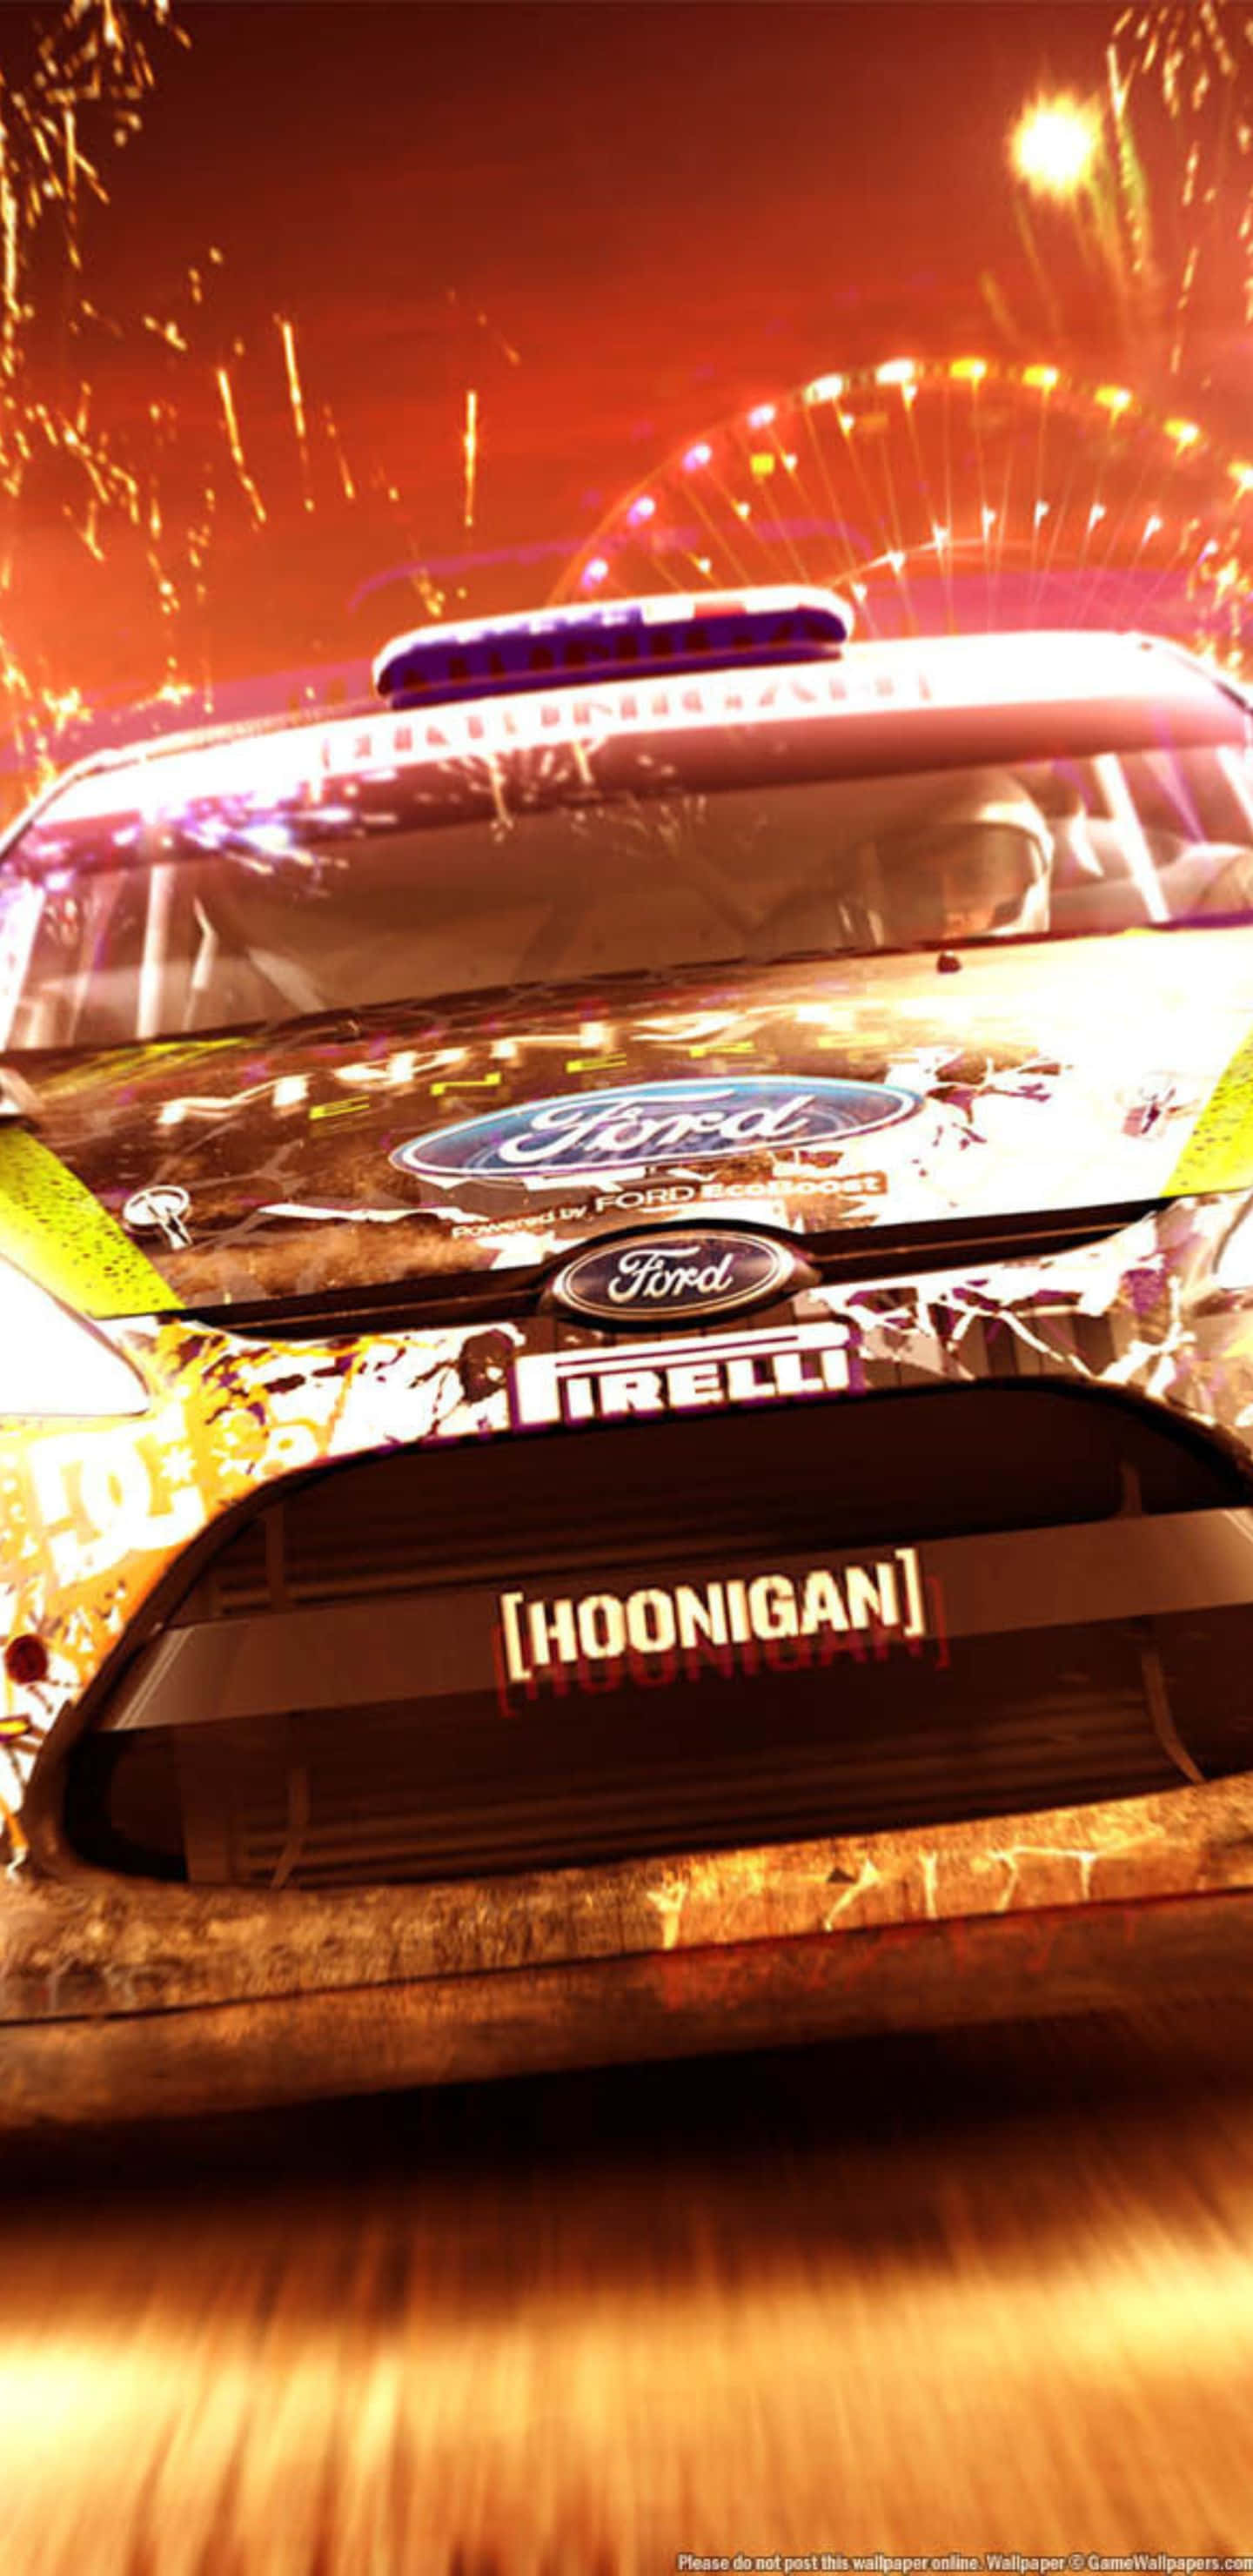 Dirtshowdown Ford Fiesta Hfhv Bakgrundsbild